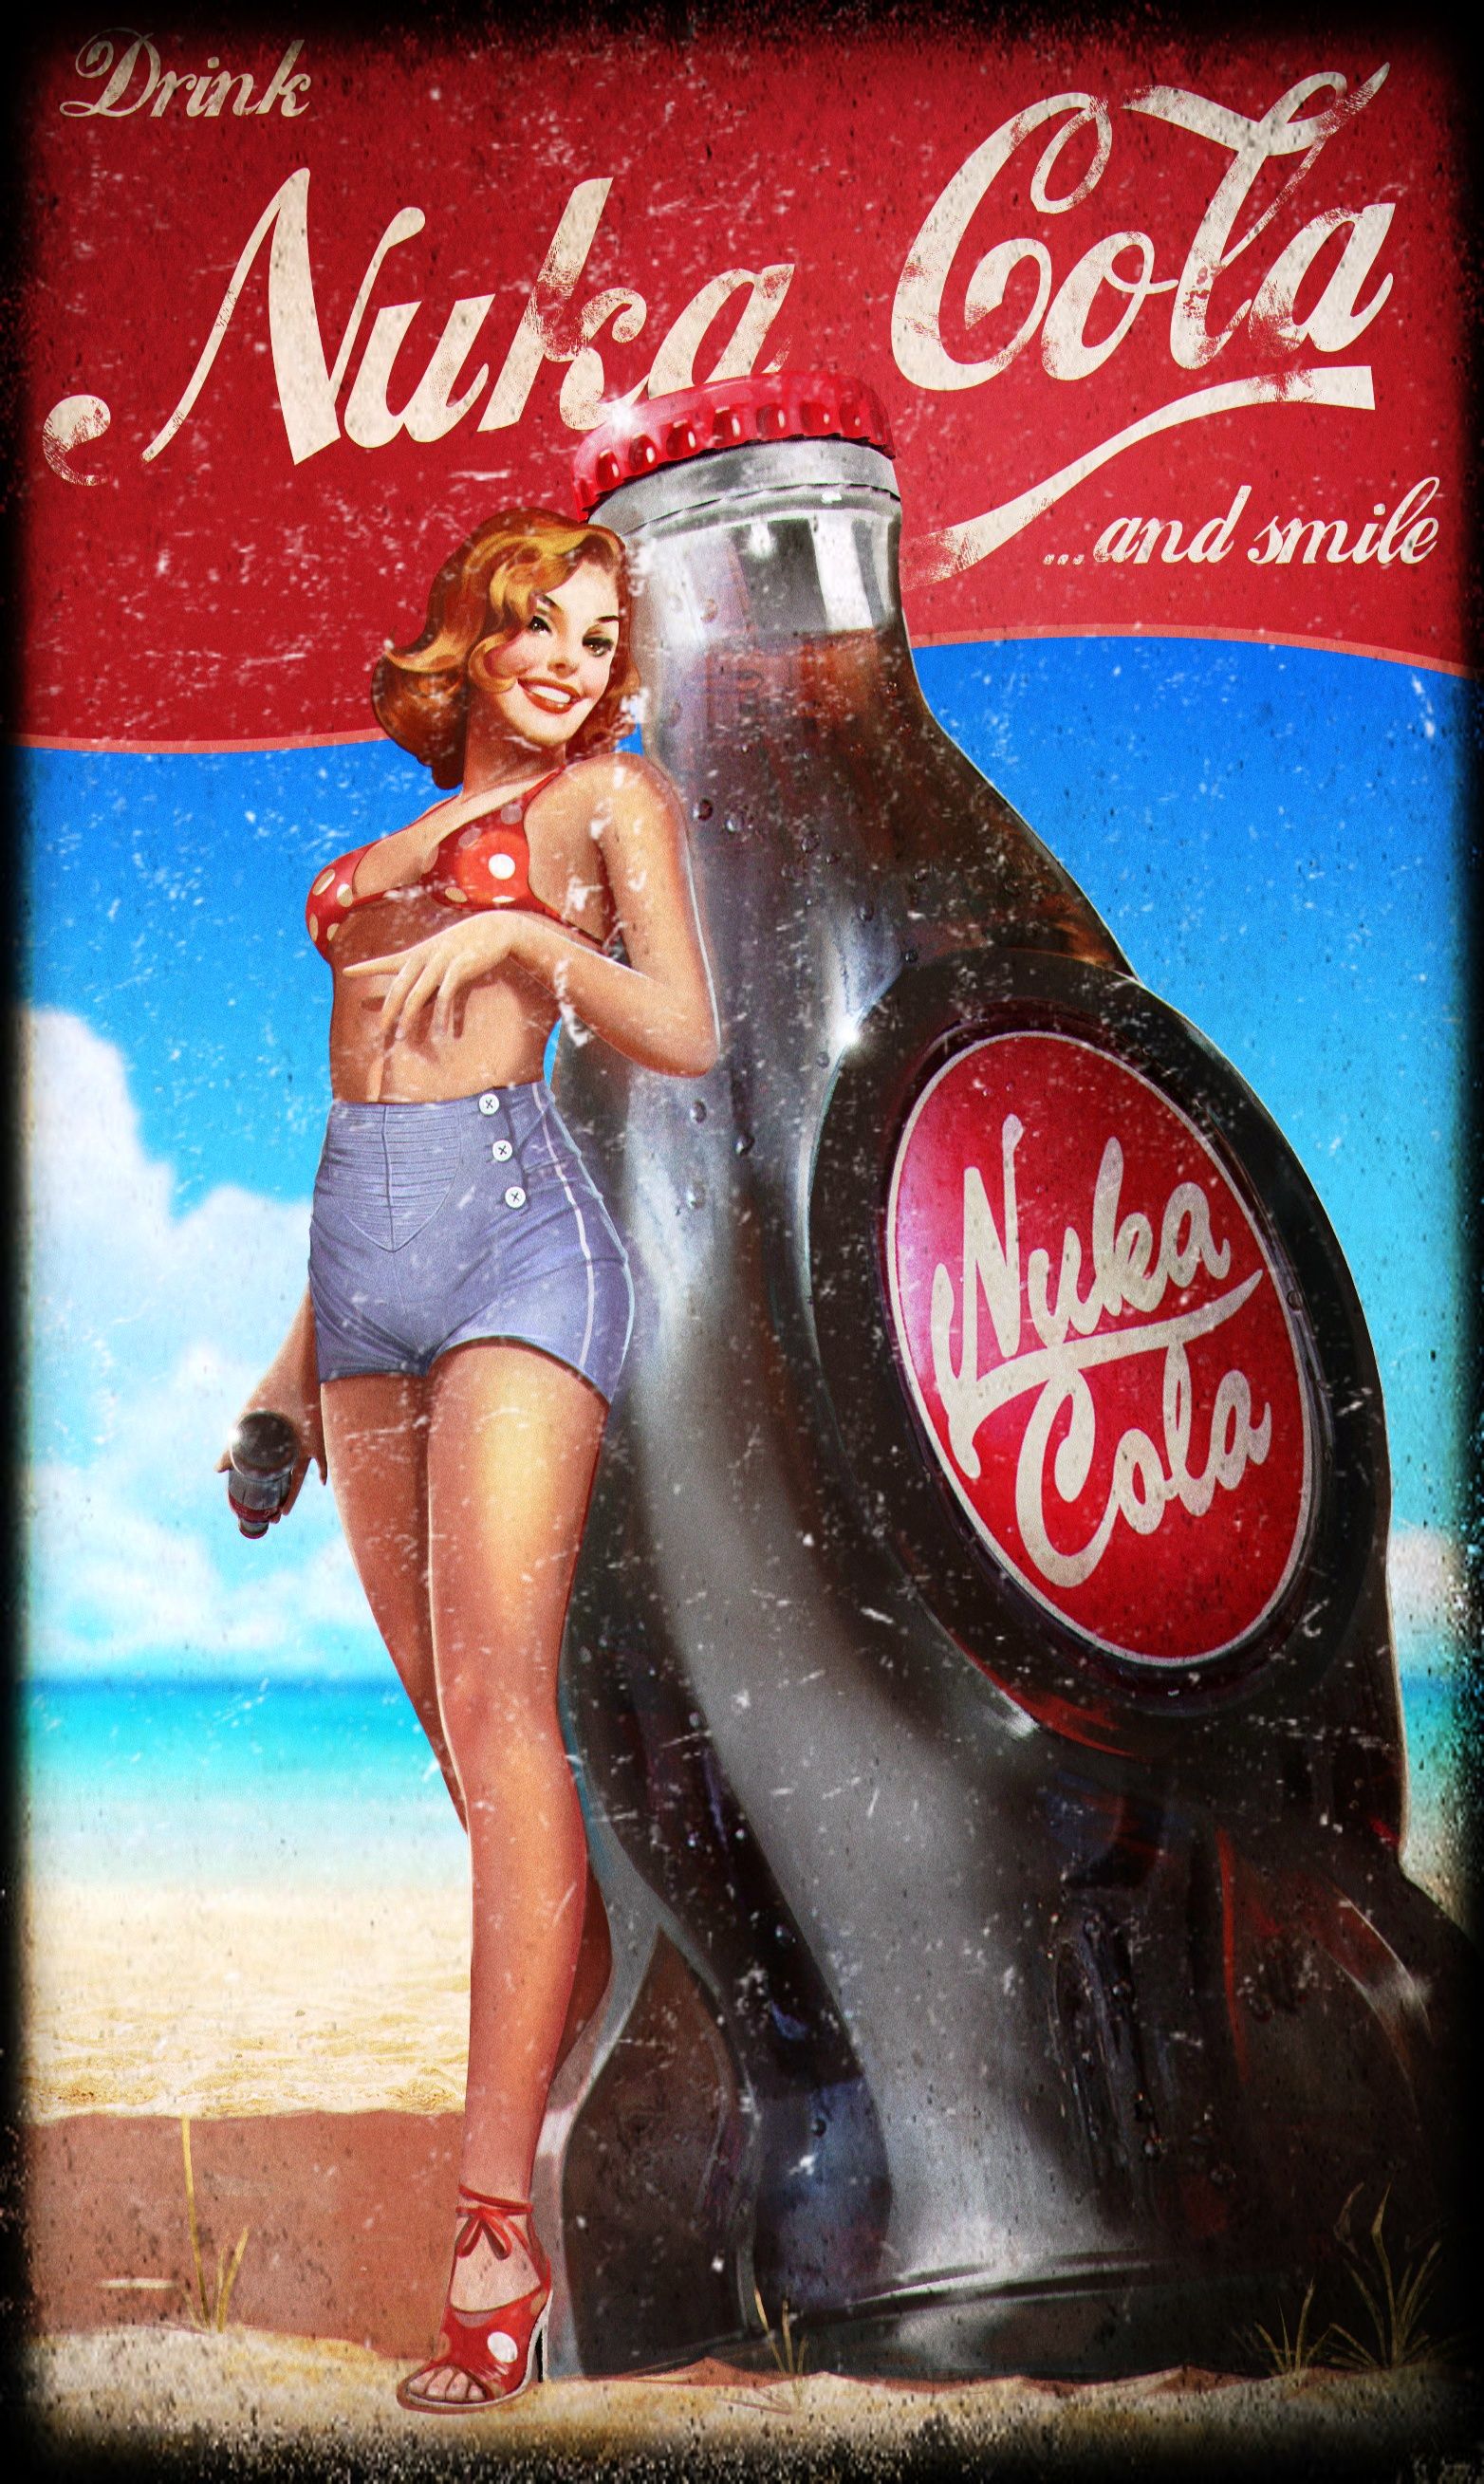 nuka cola phone - Drink Nuksa Cola ...and smile